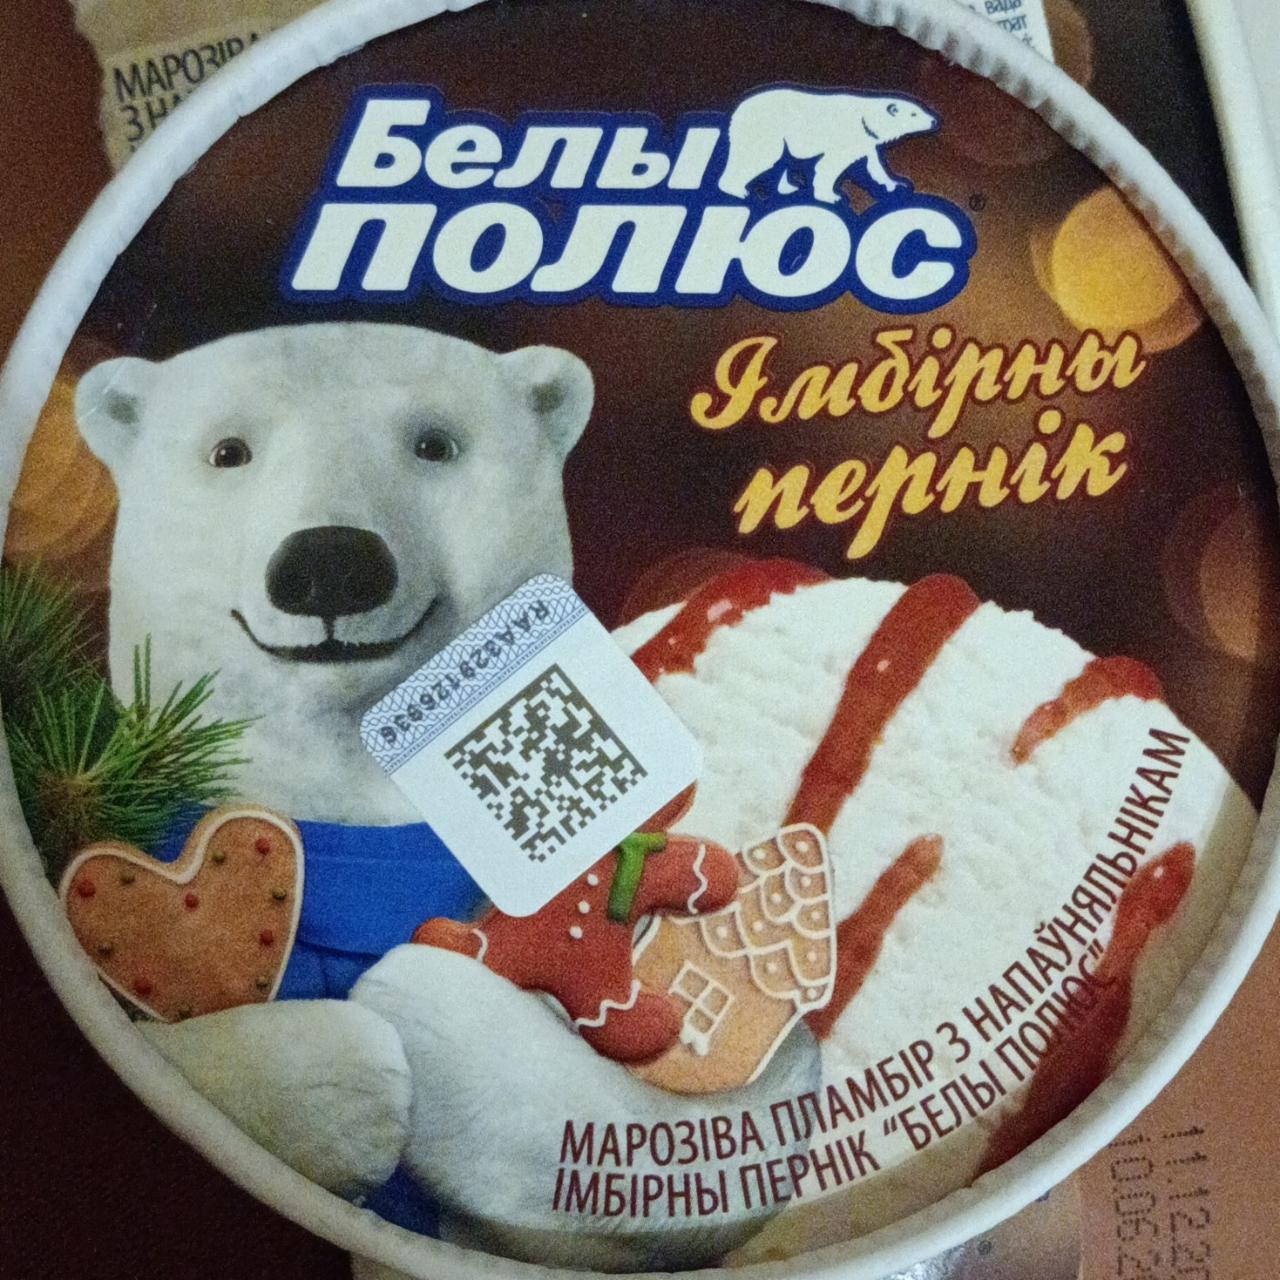 Фото - Мороженое пломбир ванильное с наполнителем имбирный пряник Белый полюс